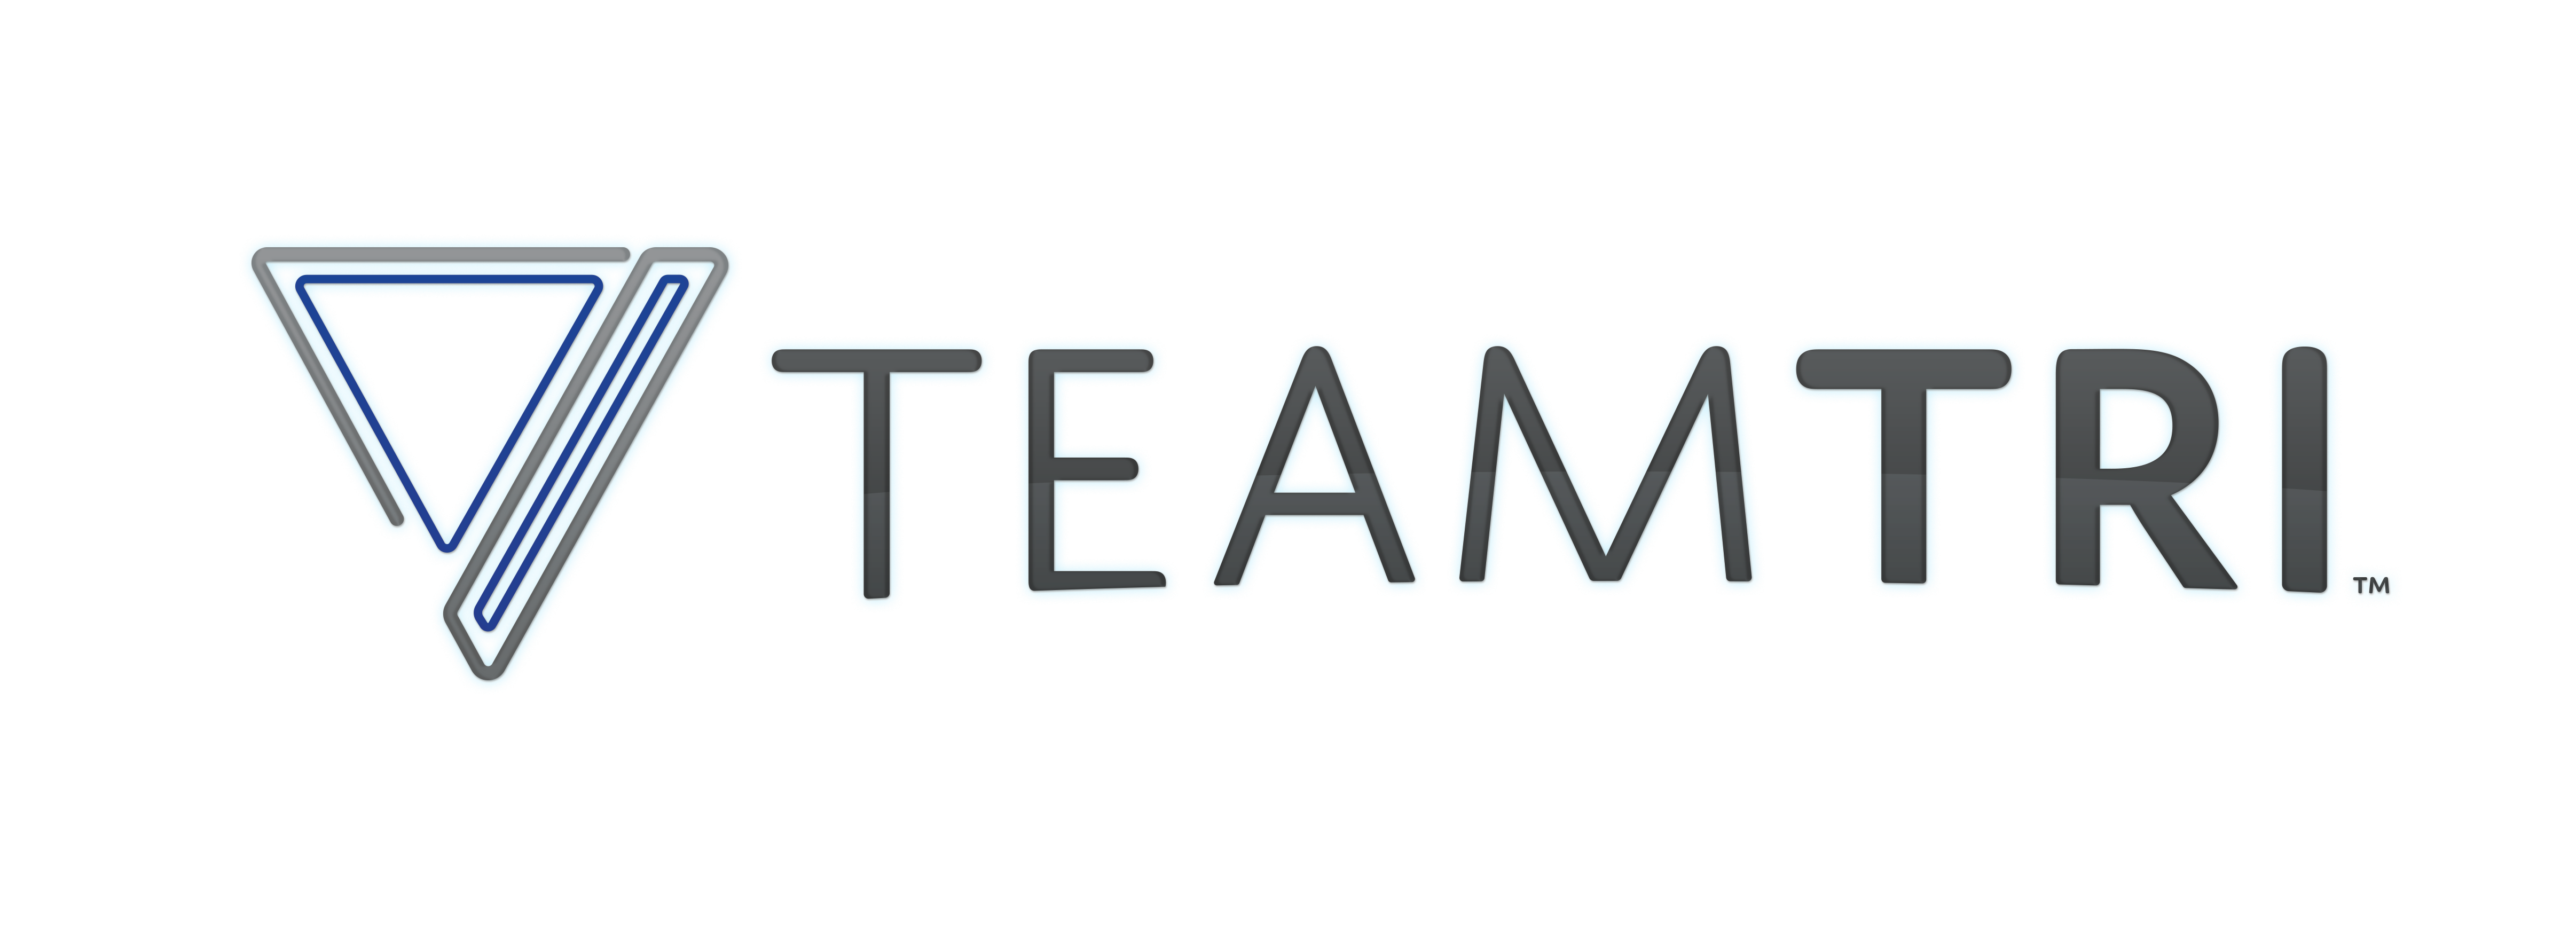 Team Tri logo